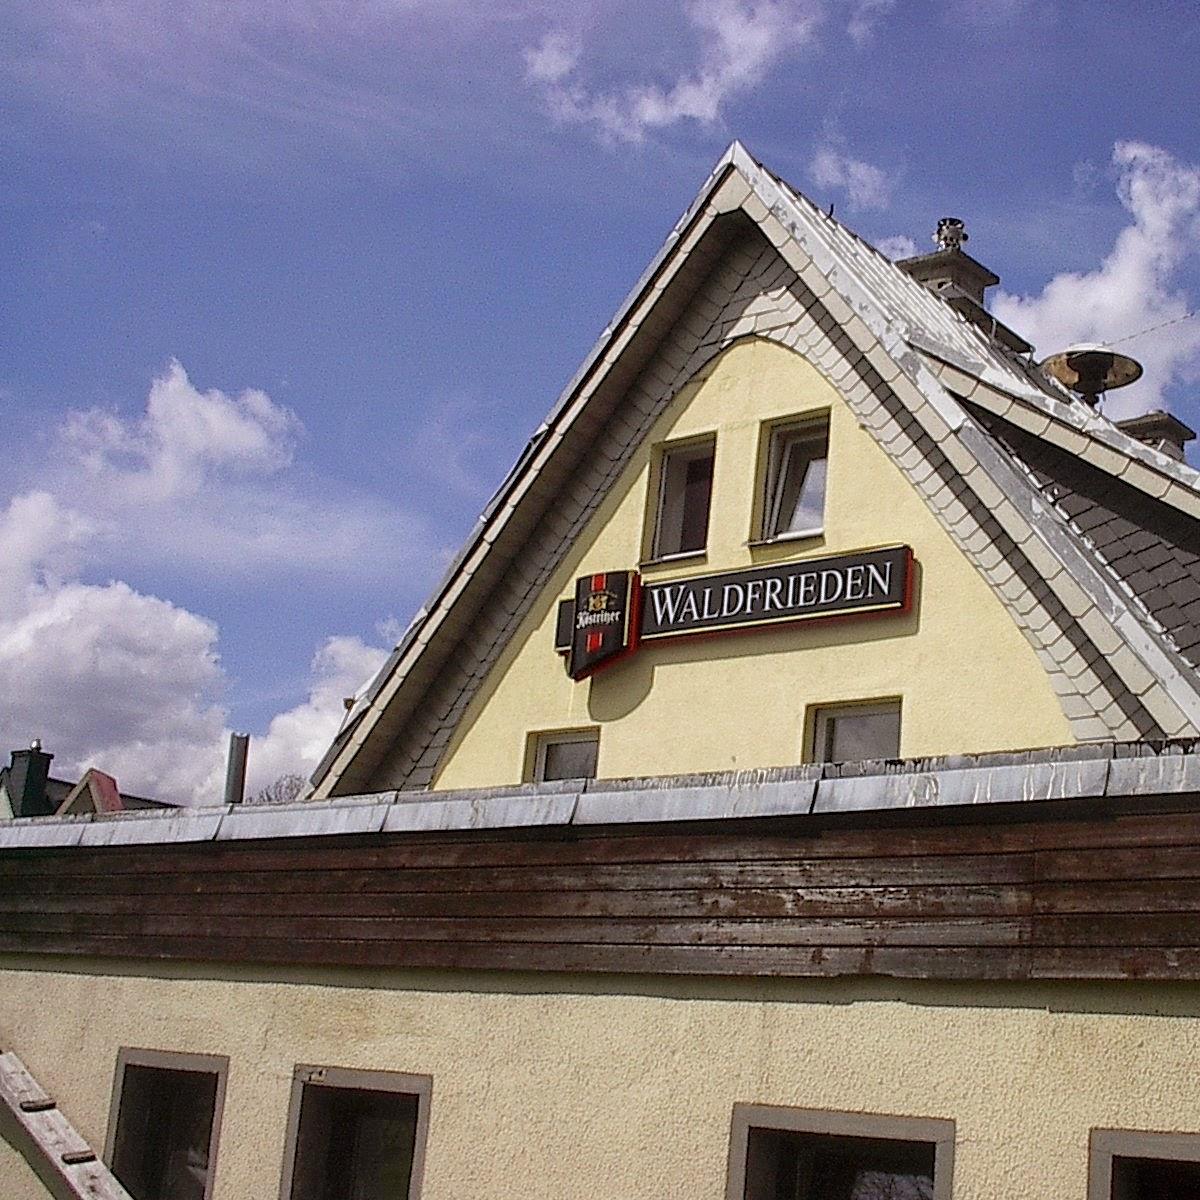 Restaurant "Gaststätte Waldfrieden - Erlebnisgastronomie Essen vom heißen Stein" in Sehmatal